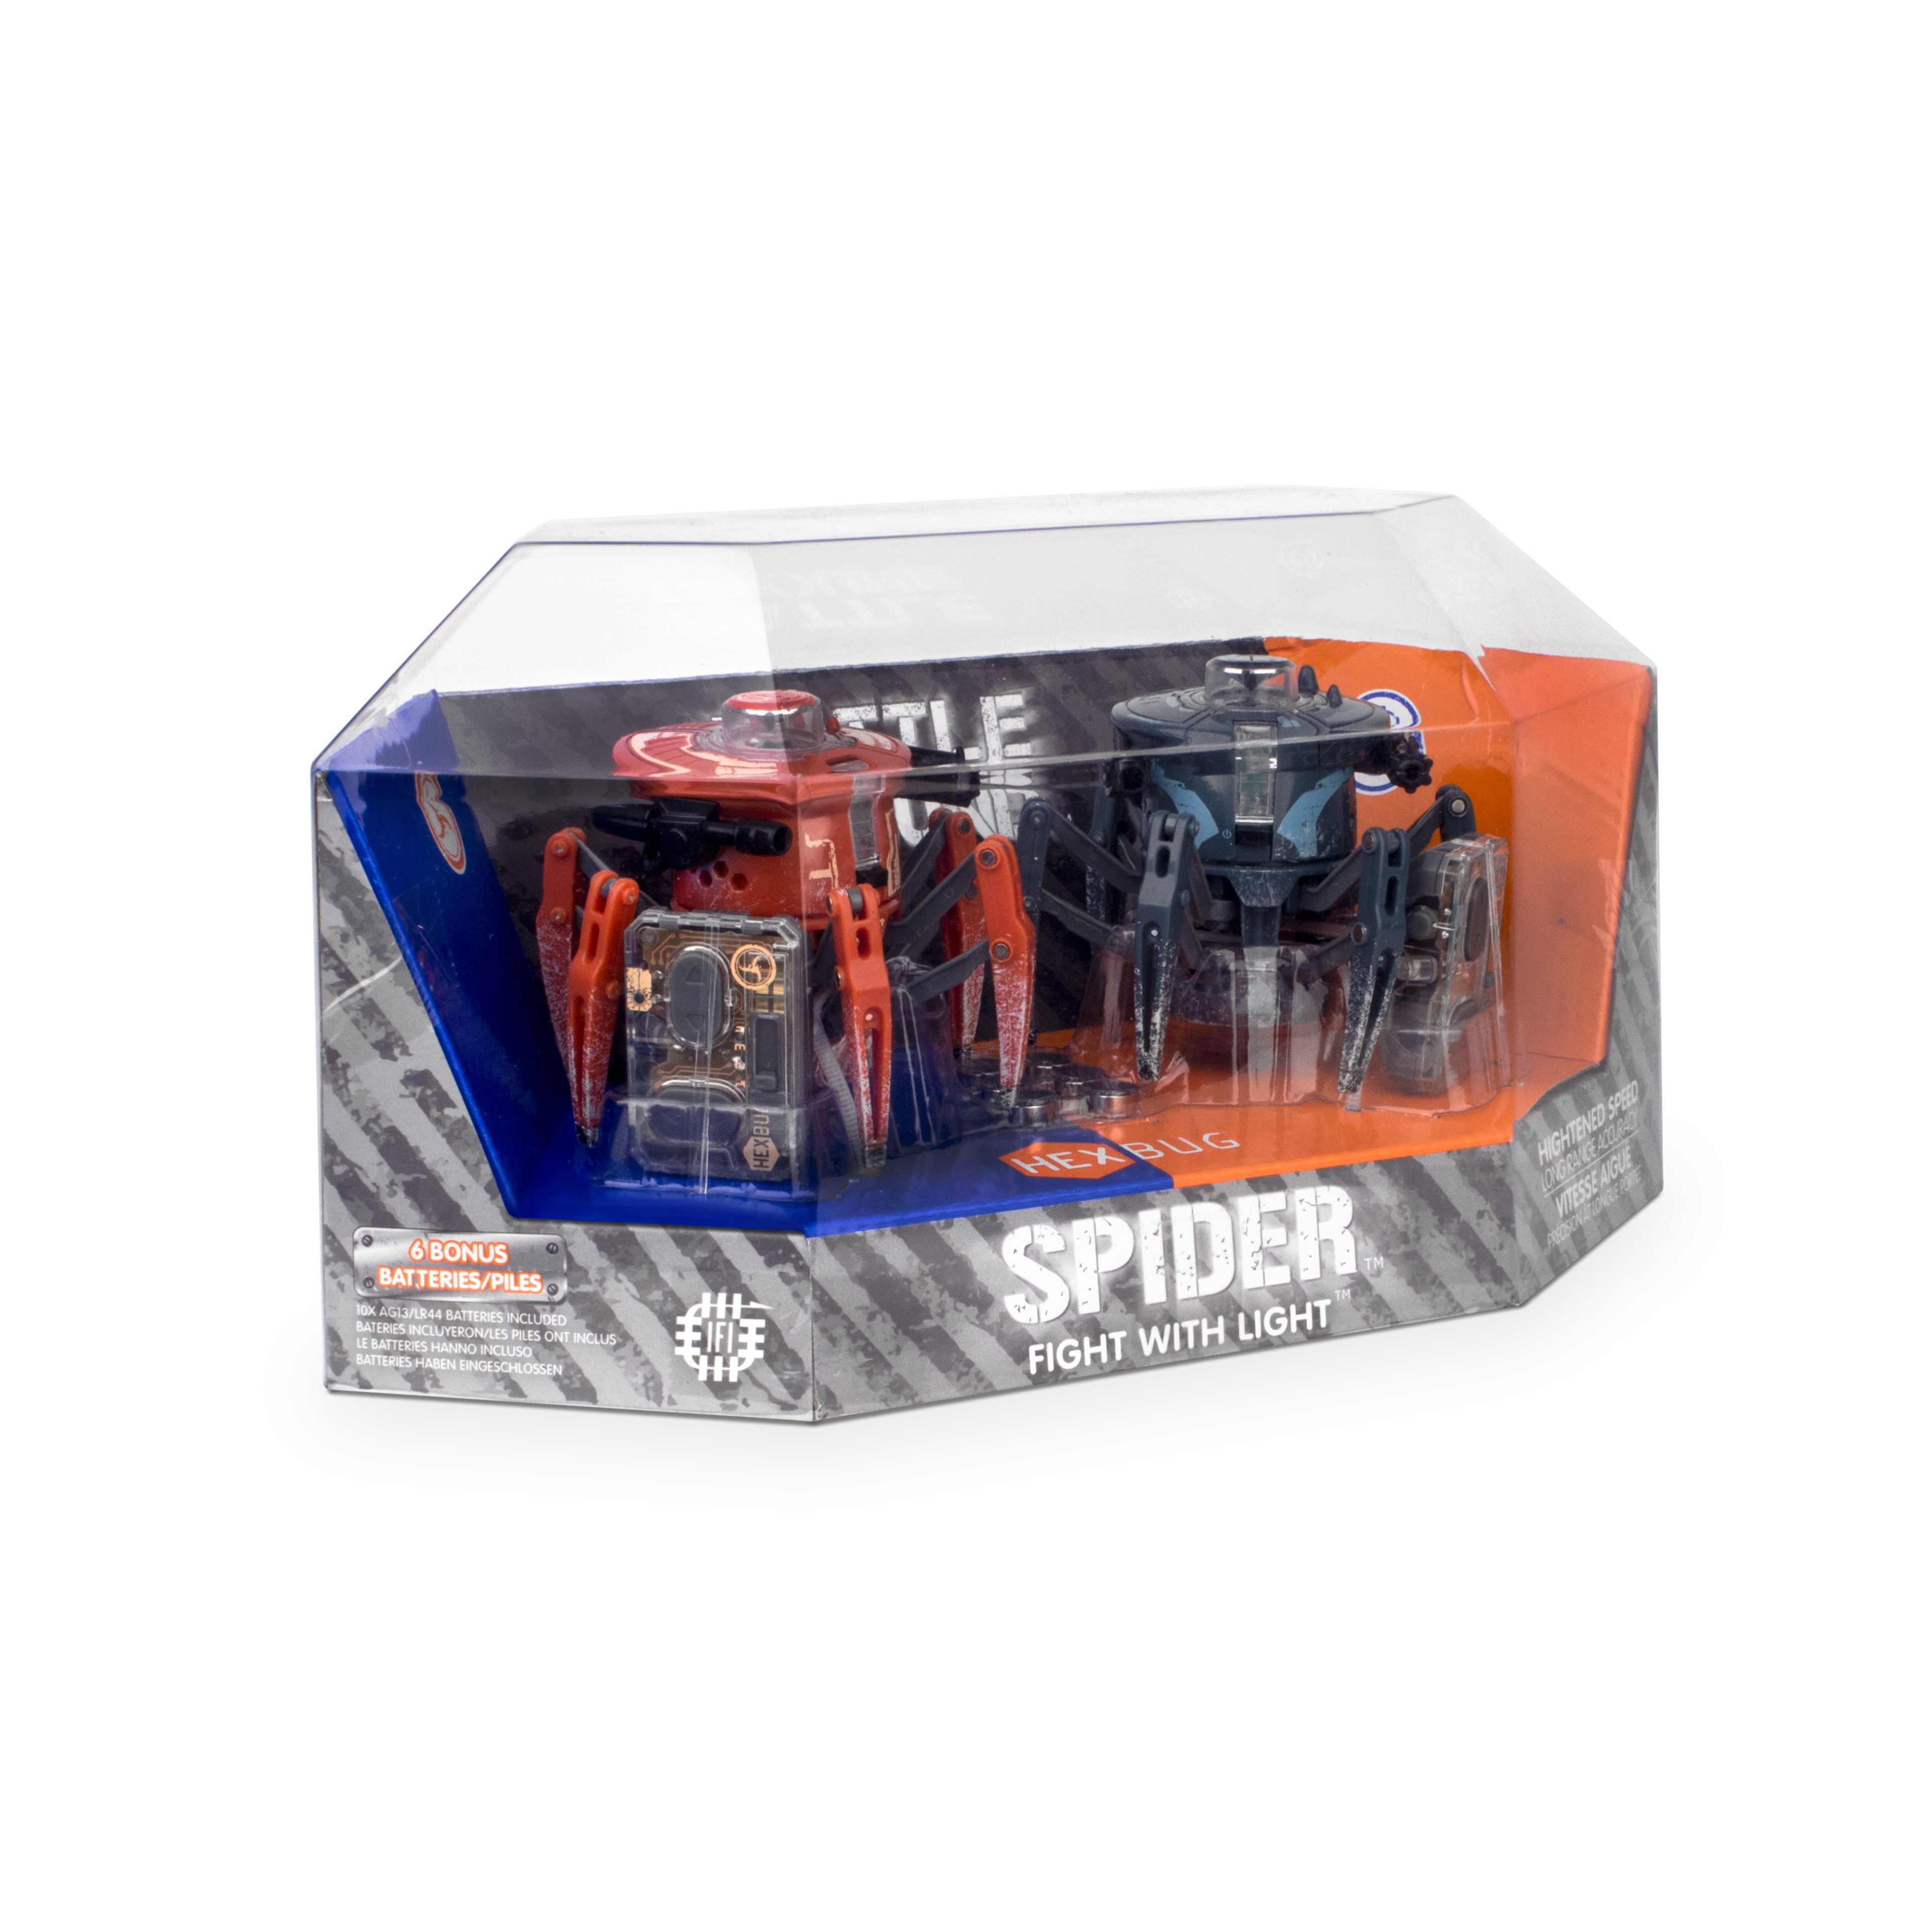 hexbug battle spider 2 pack